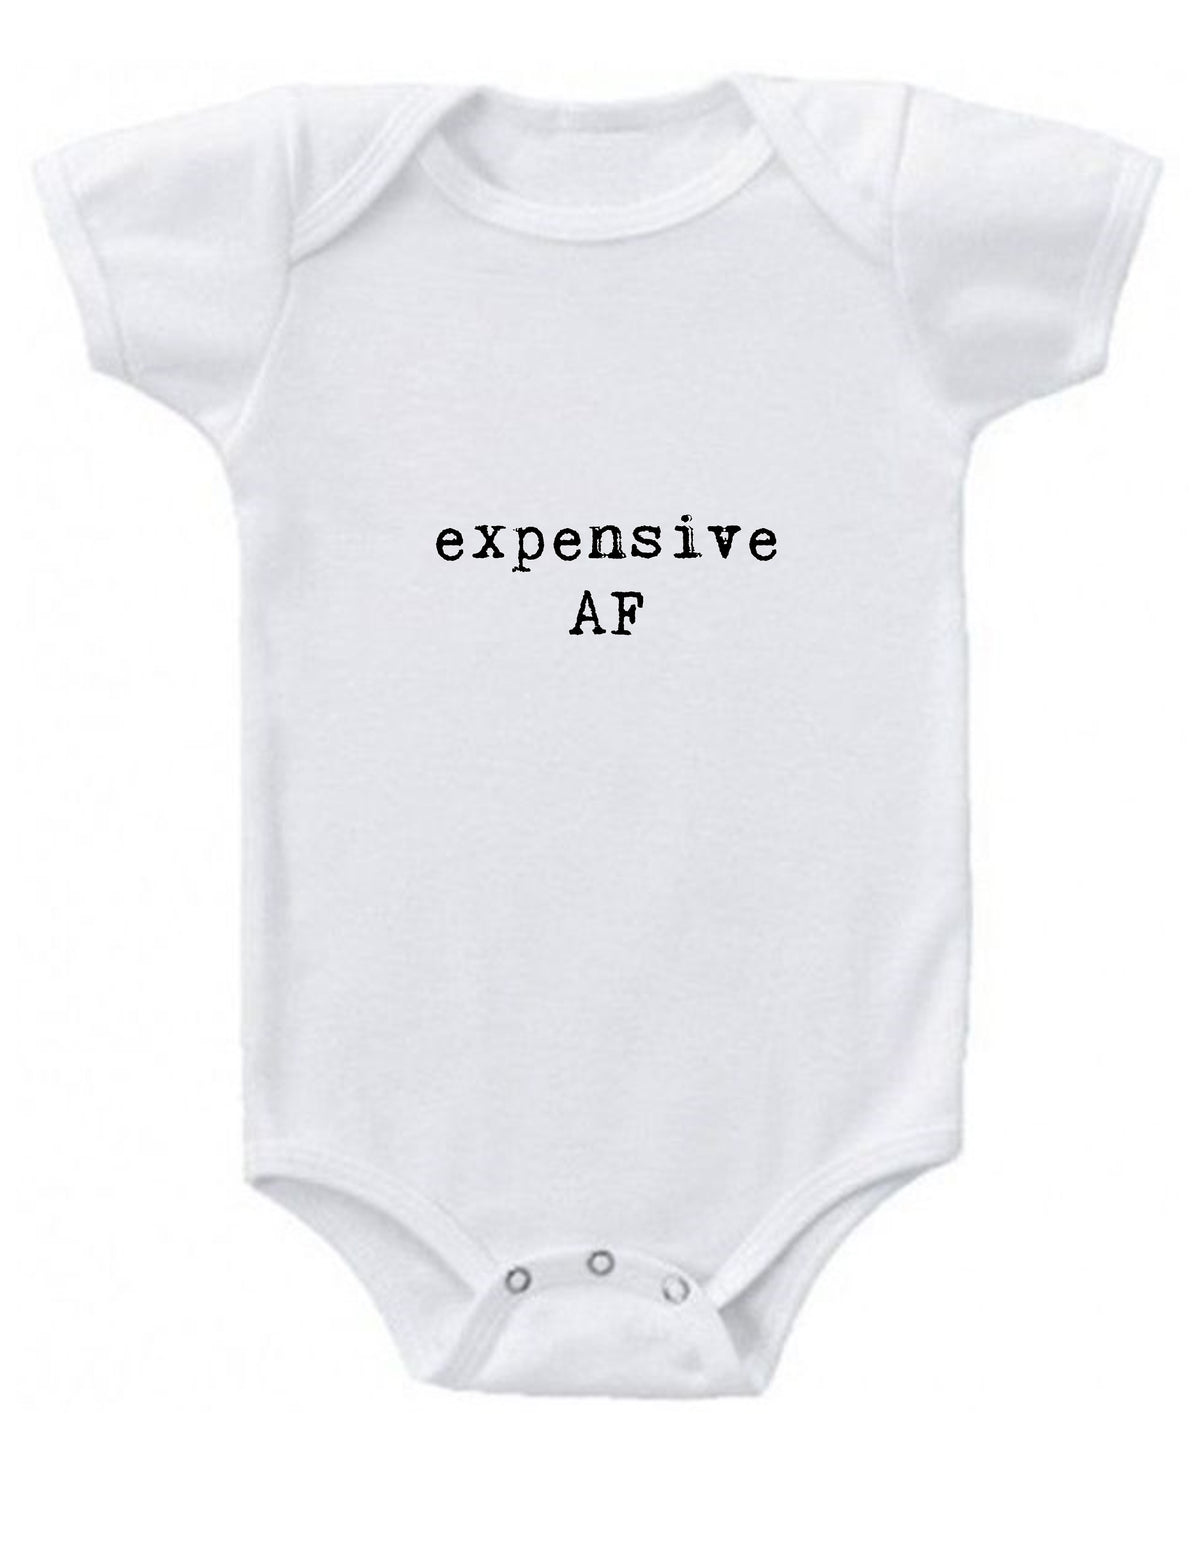 expensive af Baby Onesie